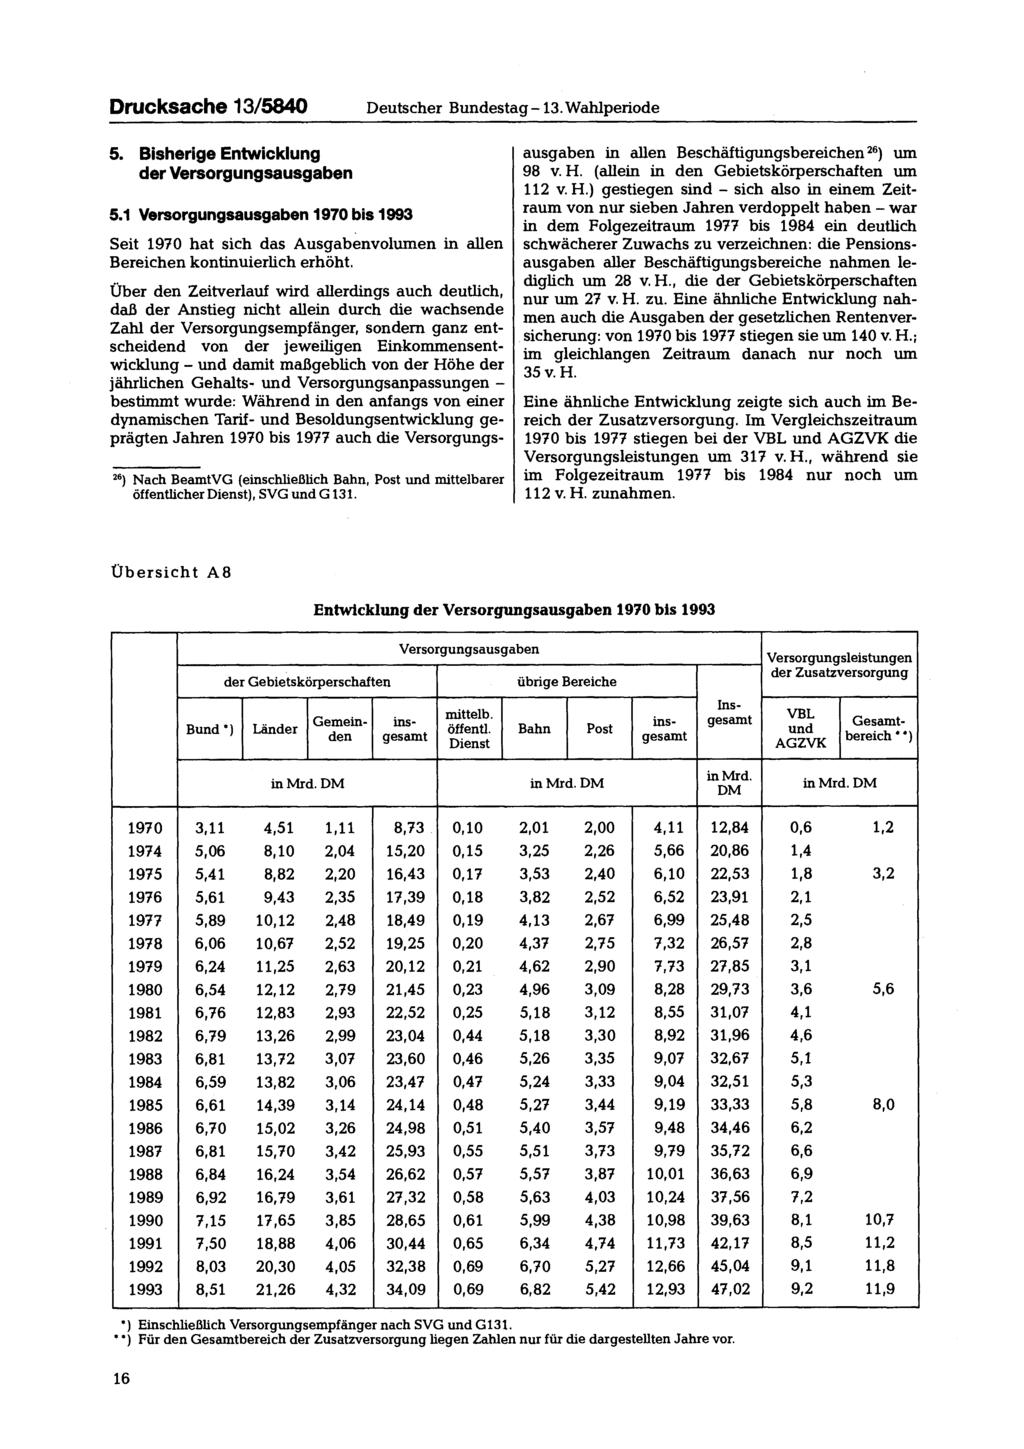 Drucksache 13/5840 Deutscher Bundestag-13. Wahlperiode 5. Bisherige Entwicklung der Versorgungsausgaben 5.